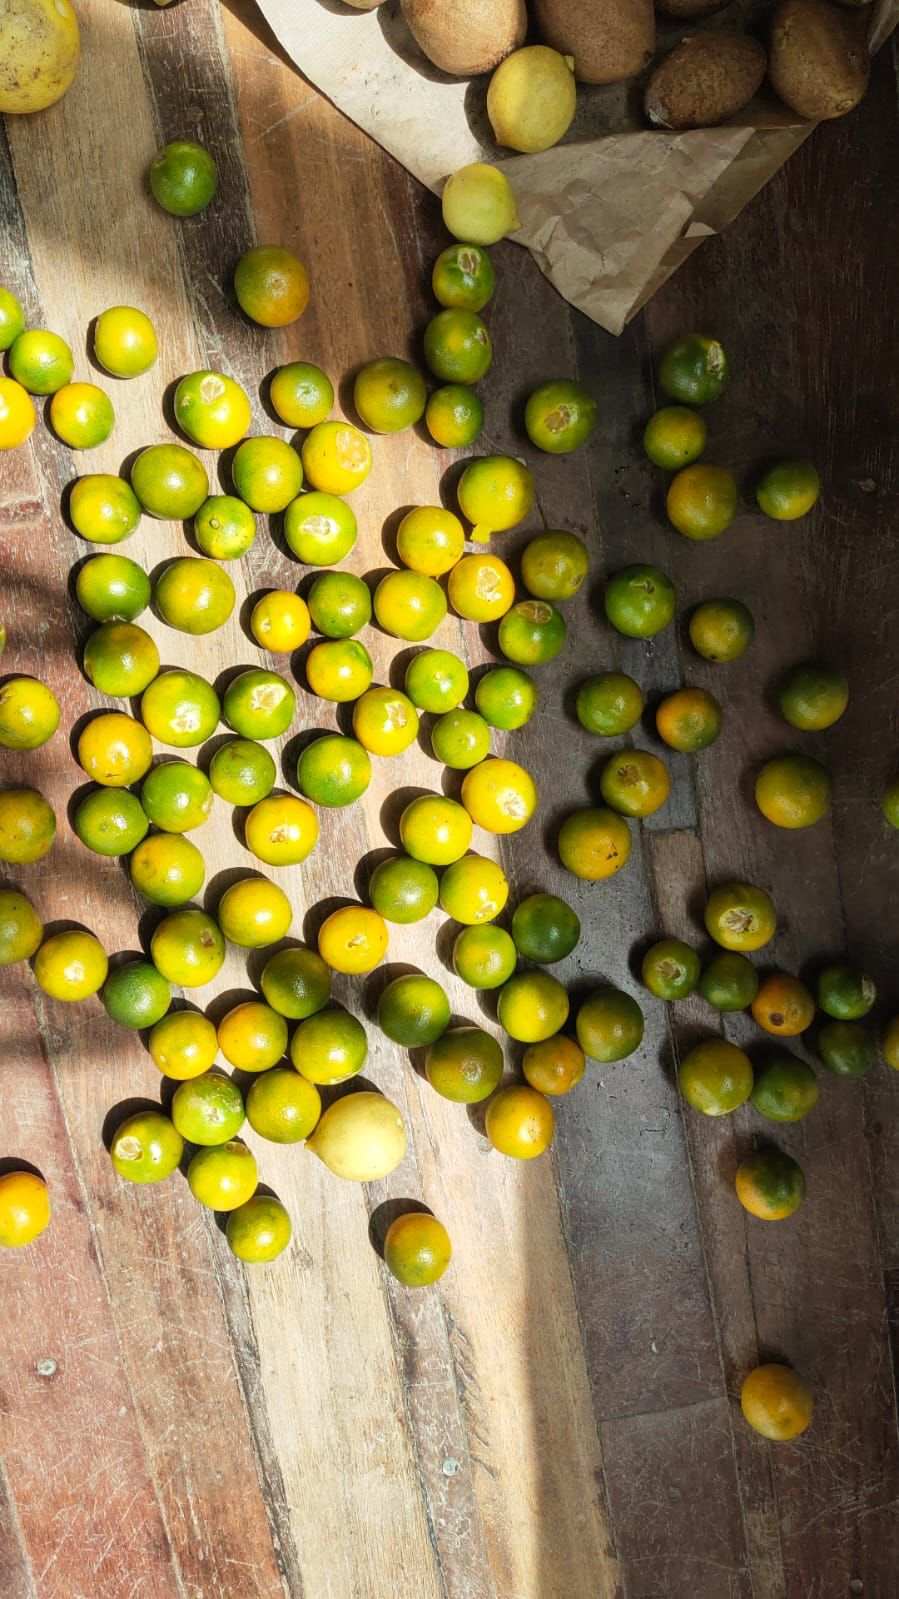 Pohon lemon, suppota, dan lainnya berlimpah di hutan makanan